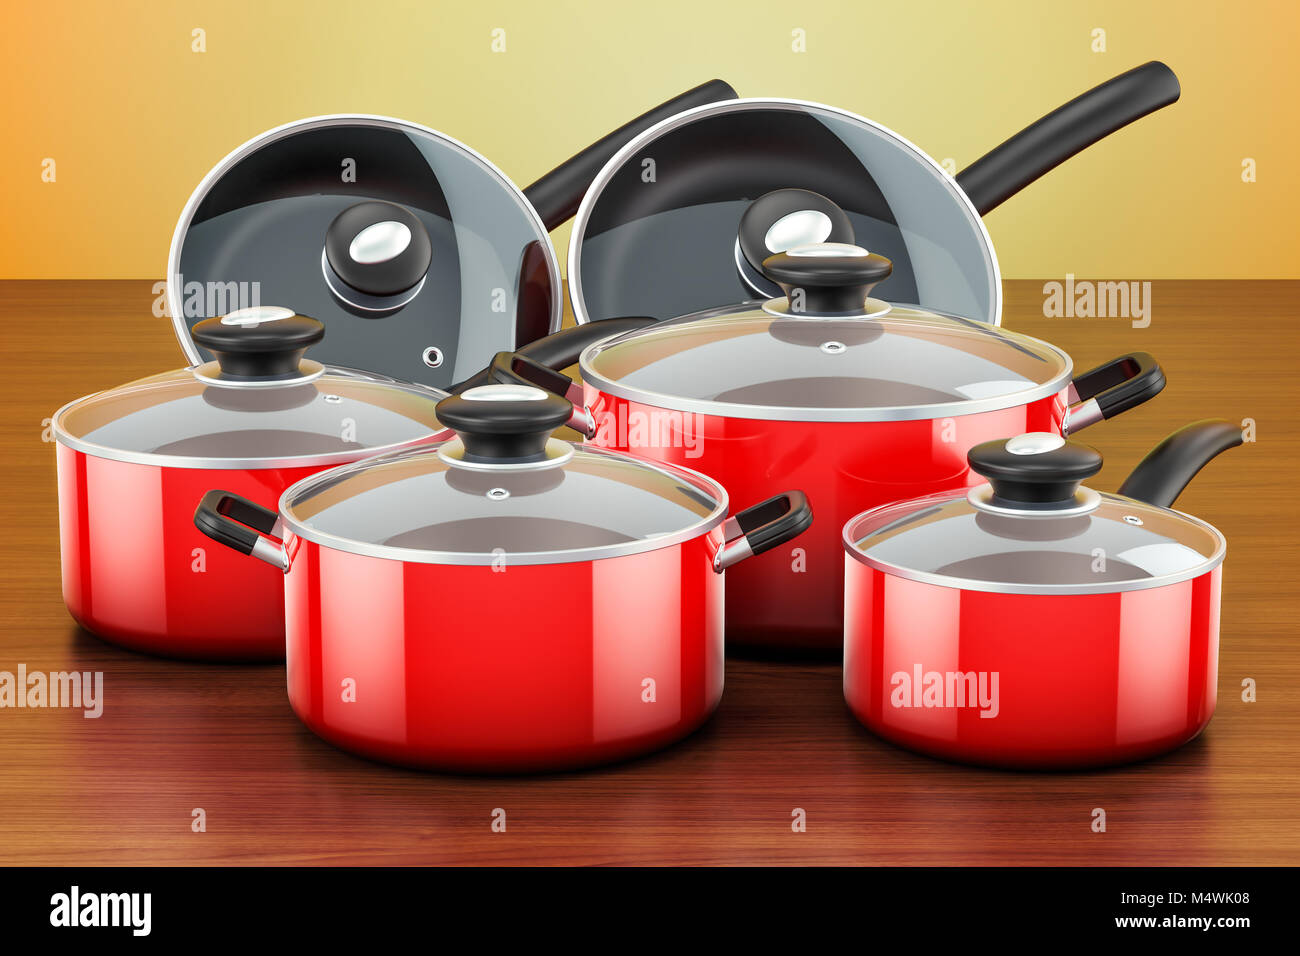 https://c8.alamy.com/compes/m4wk08/juego-de-cocinar-rojo-utensilios-de-cocina-y-vajilla-las-ollas-y-sartenes-en-la-mesa-de-madera-3d-rendering-m4wk08.jpg